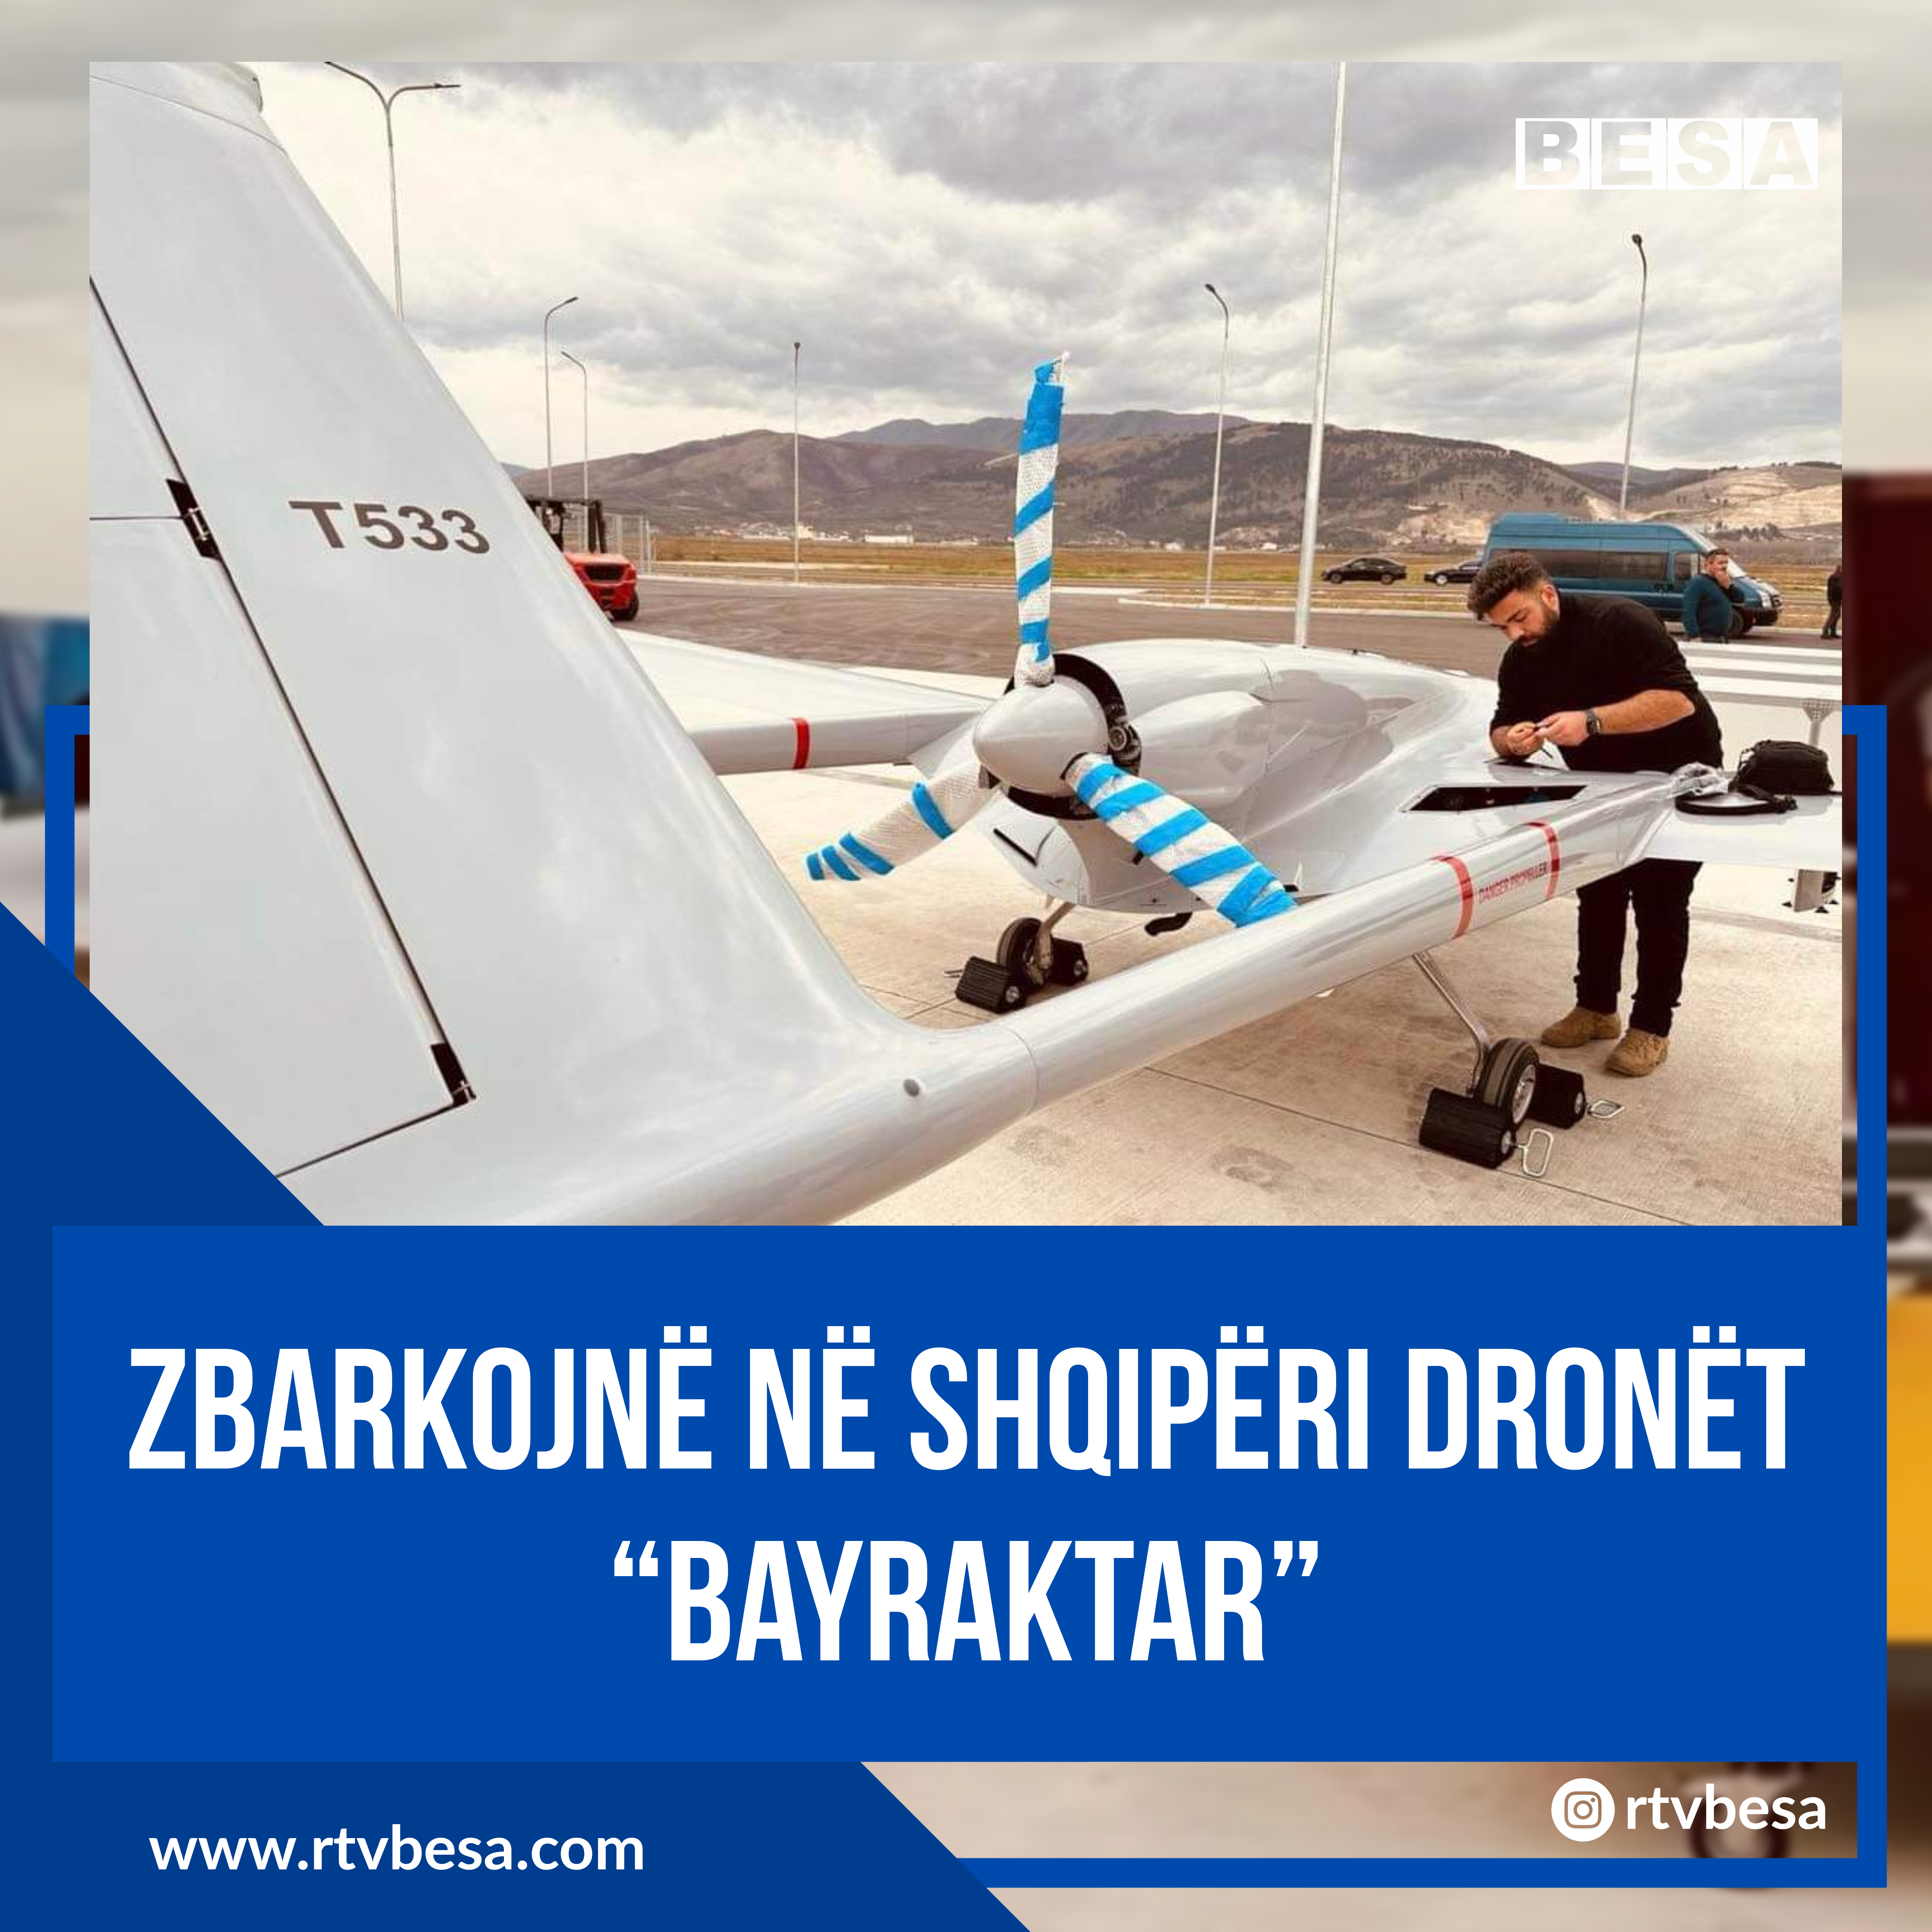 🔴Zbarkojnë në Shqipëri dronët “Bayraktar”👇🇦🇱🇹🇷